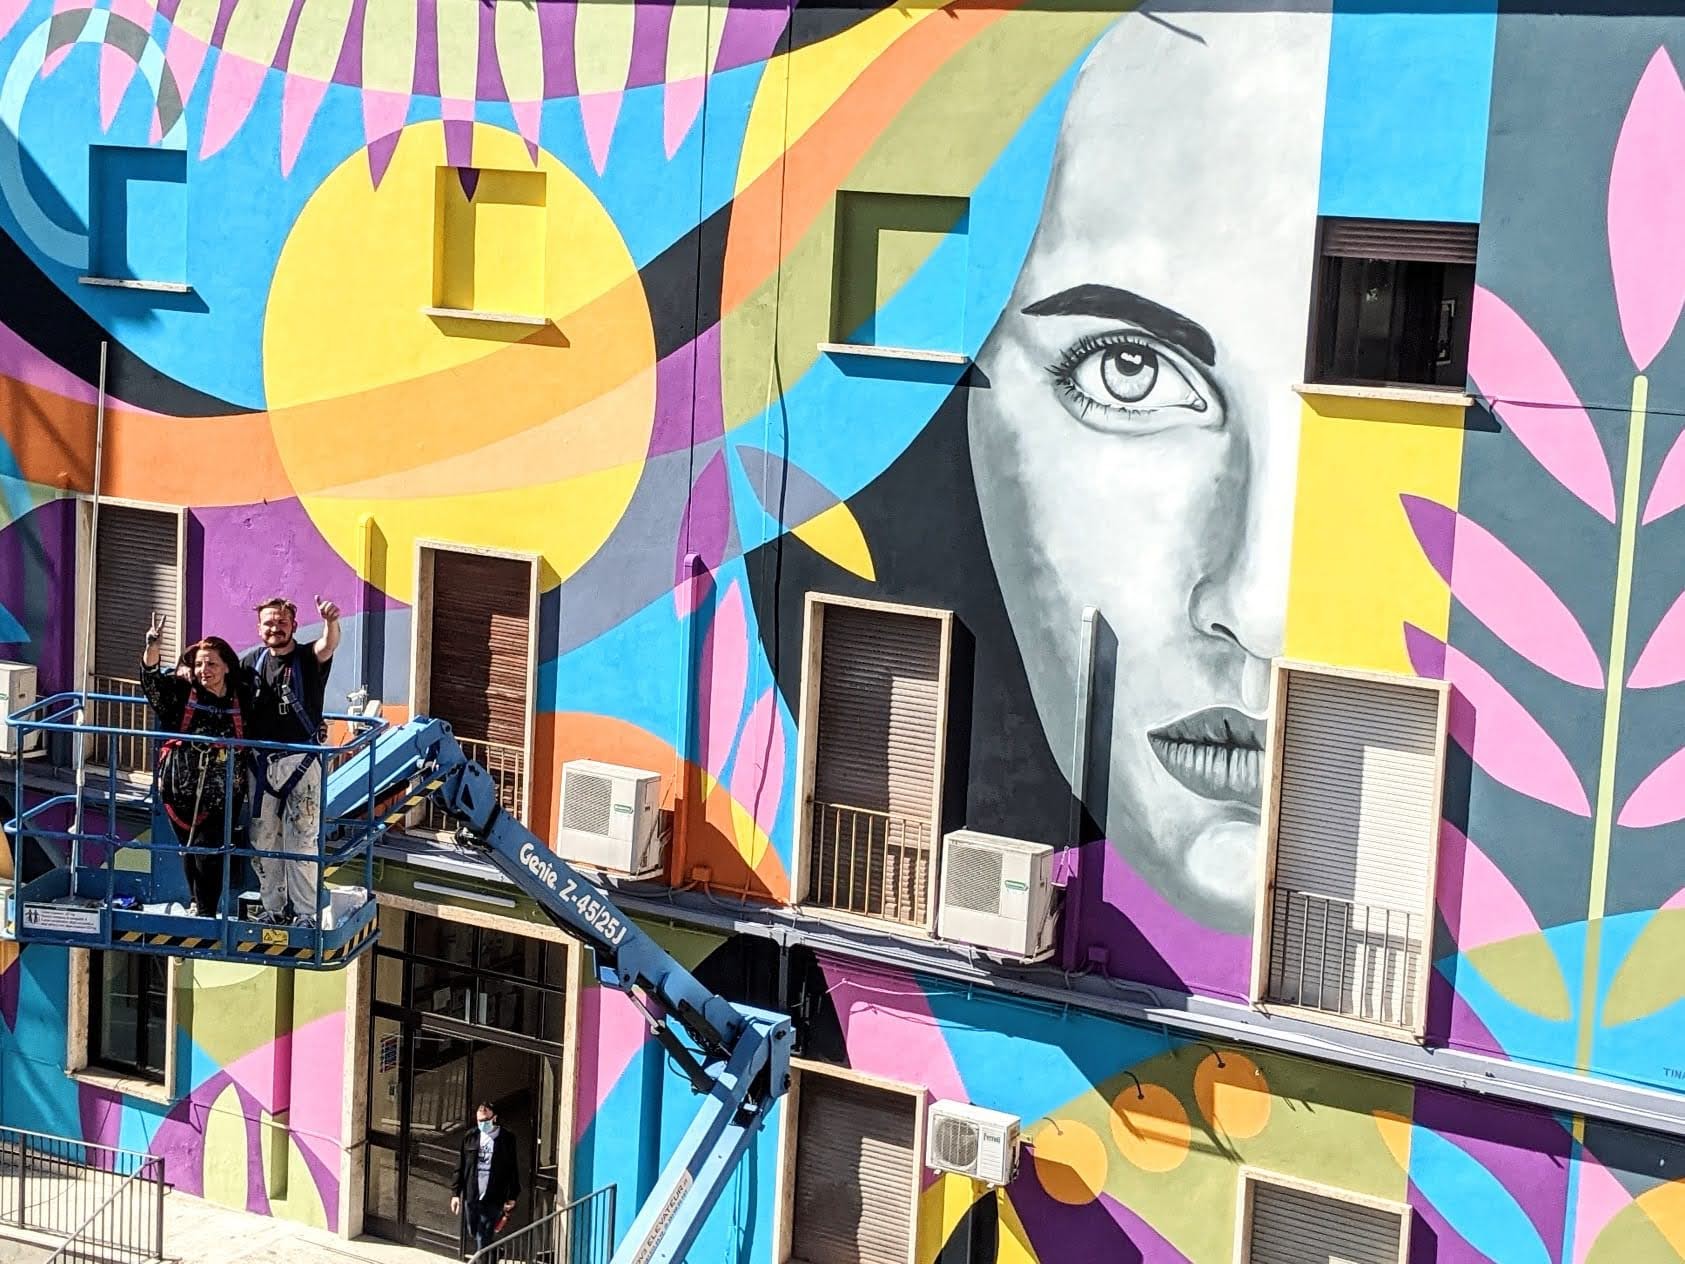 Il Tempo delle Donne – con “L’arte libera i muri” protagonista anche Street art for Rights